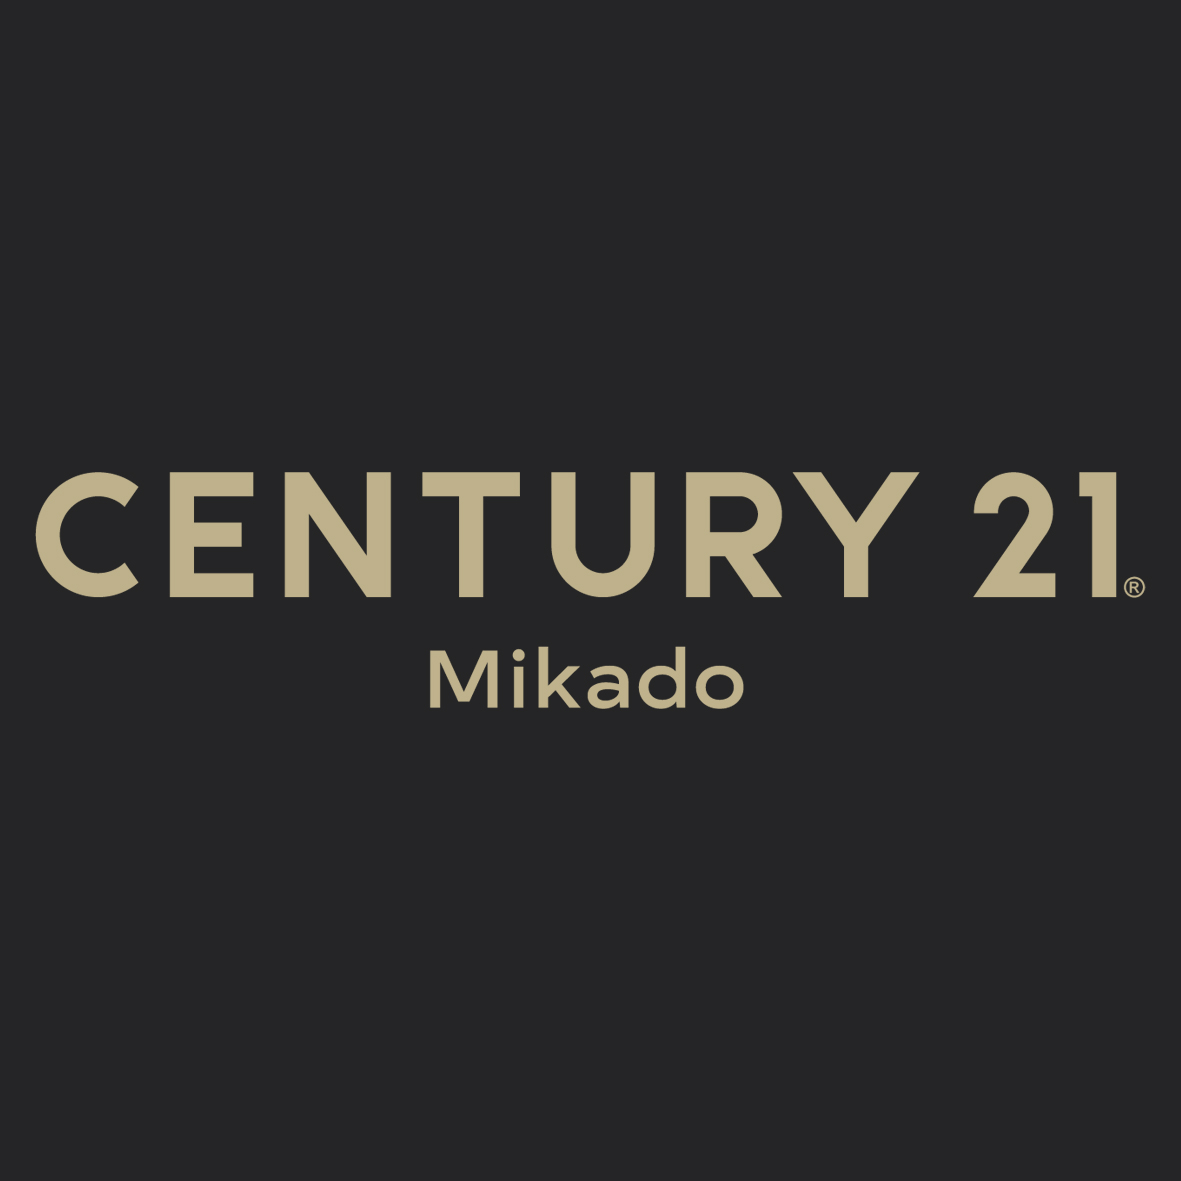 CENTURY 21 Mikado